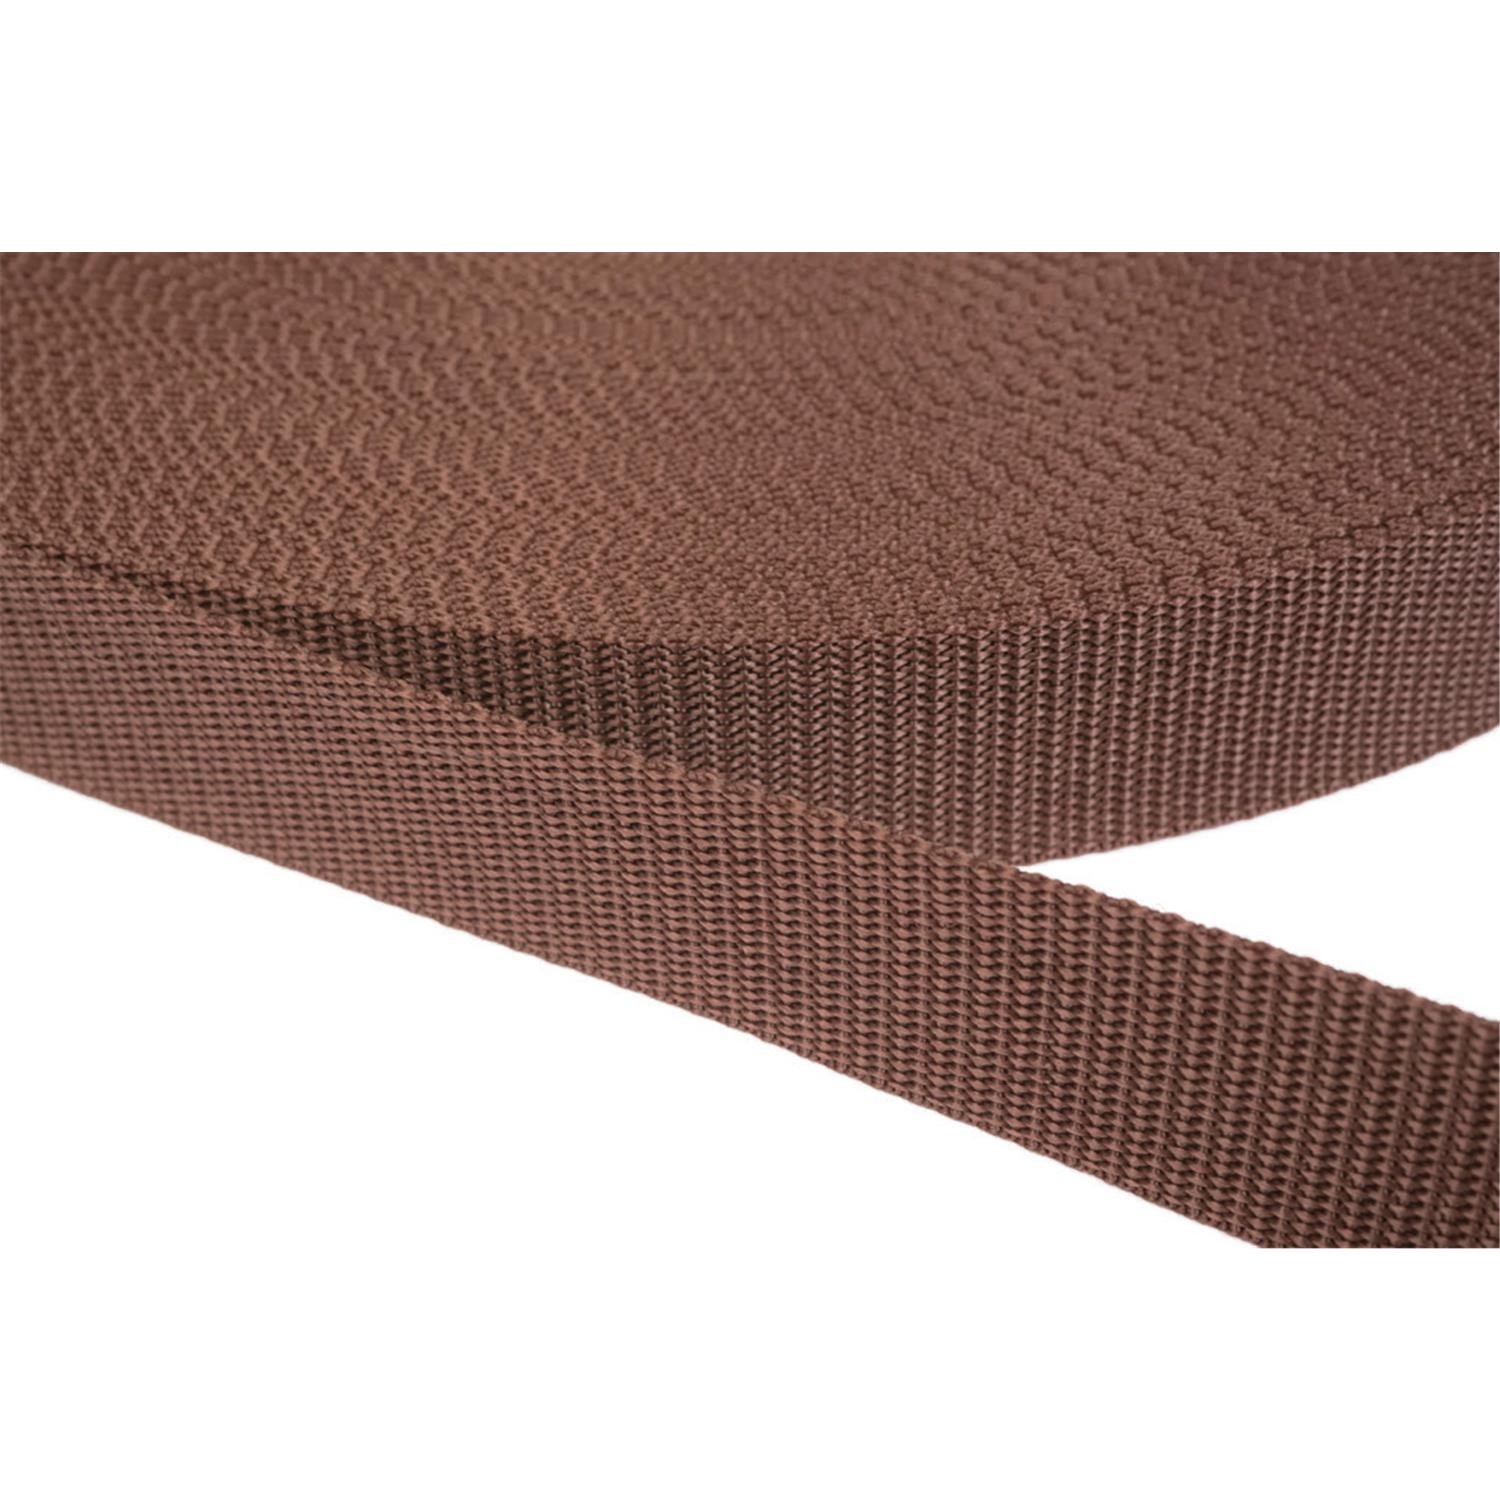 Gurtband 40mm breit aus Polypropylen in 41 Farben 07 - braun 6 Meter